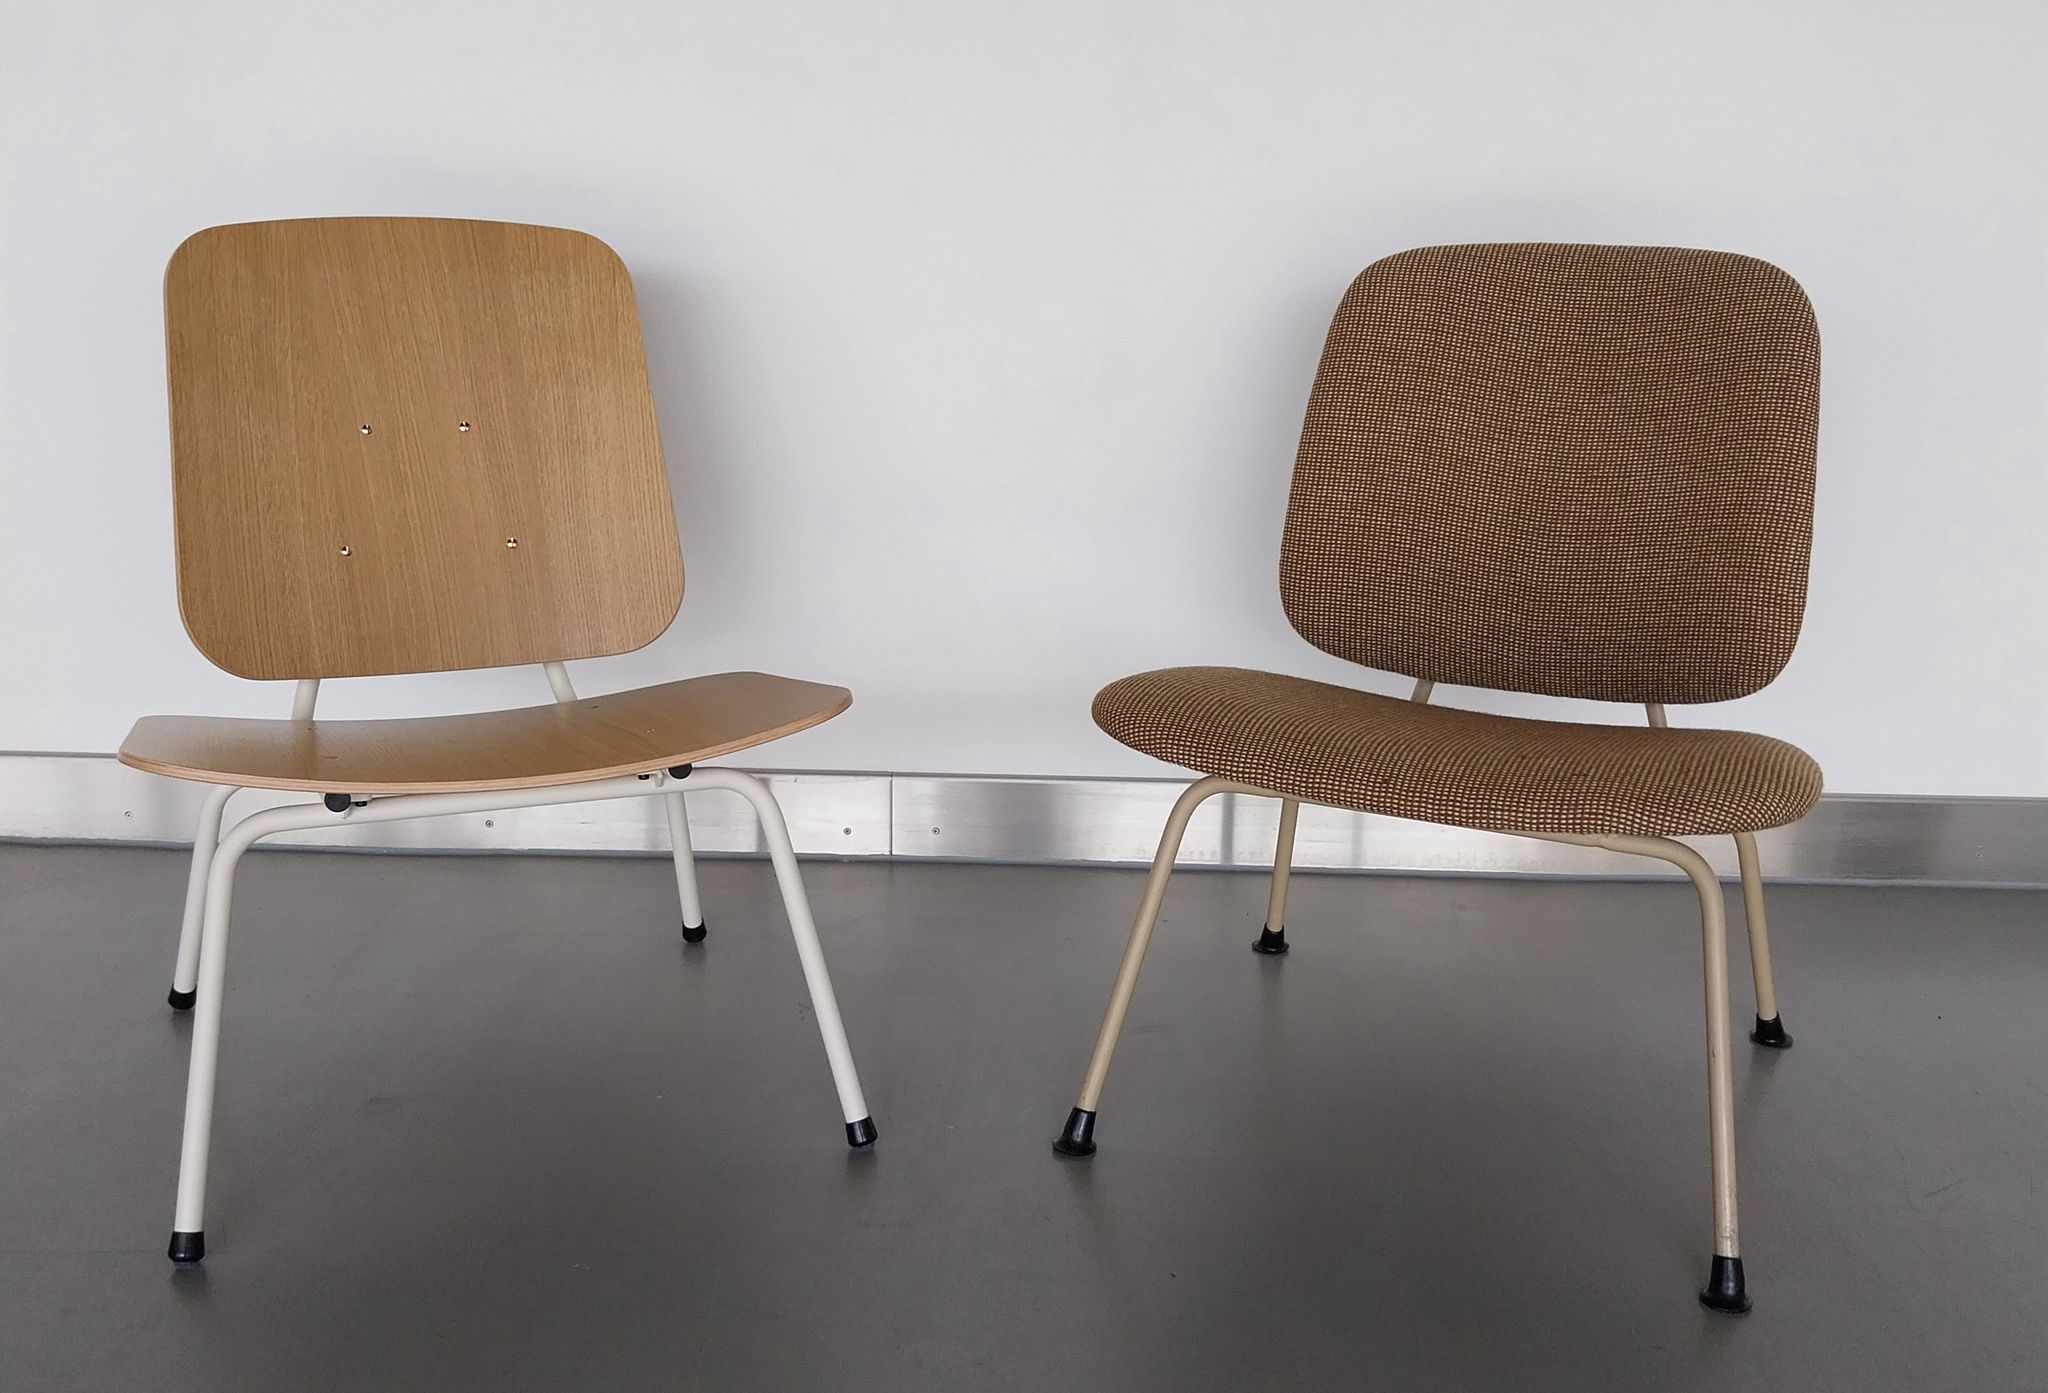 De duurzame meubels van Design in Box zijn een duidelijke knipoog zijn naar de befaamde designs van grootvader Gijs van der Sluis. Hier zie je de No13 lounge stoel van Design in Box (links) en het vintage design waarop het werd geïnspireerd (rechts).